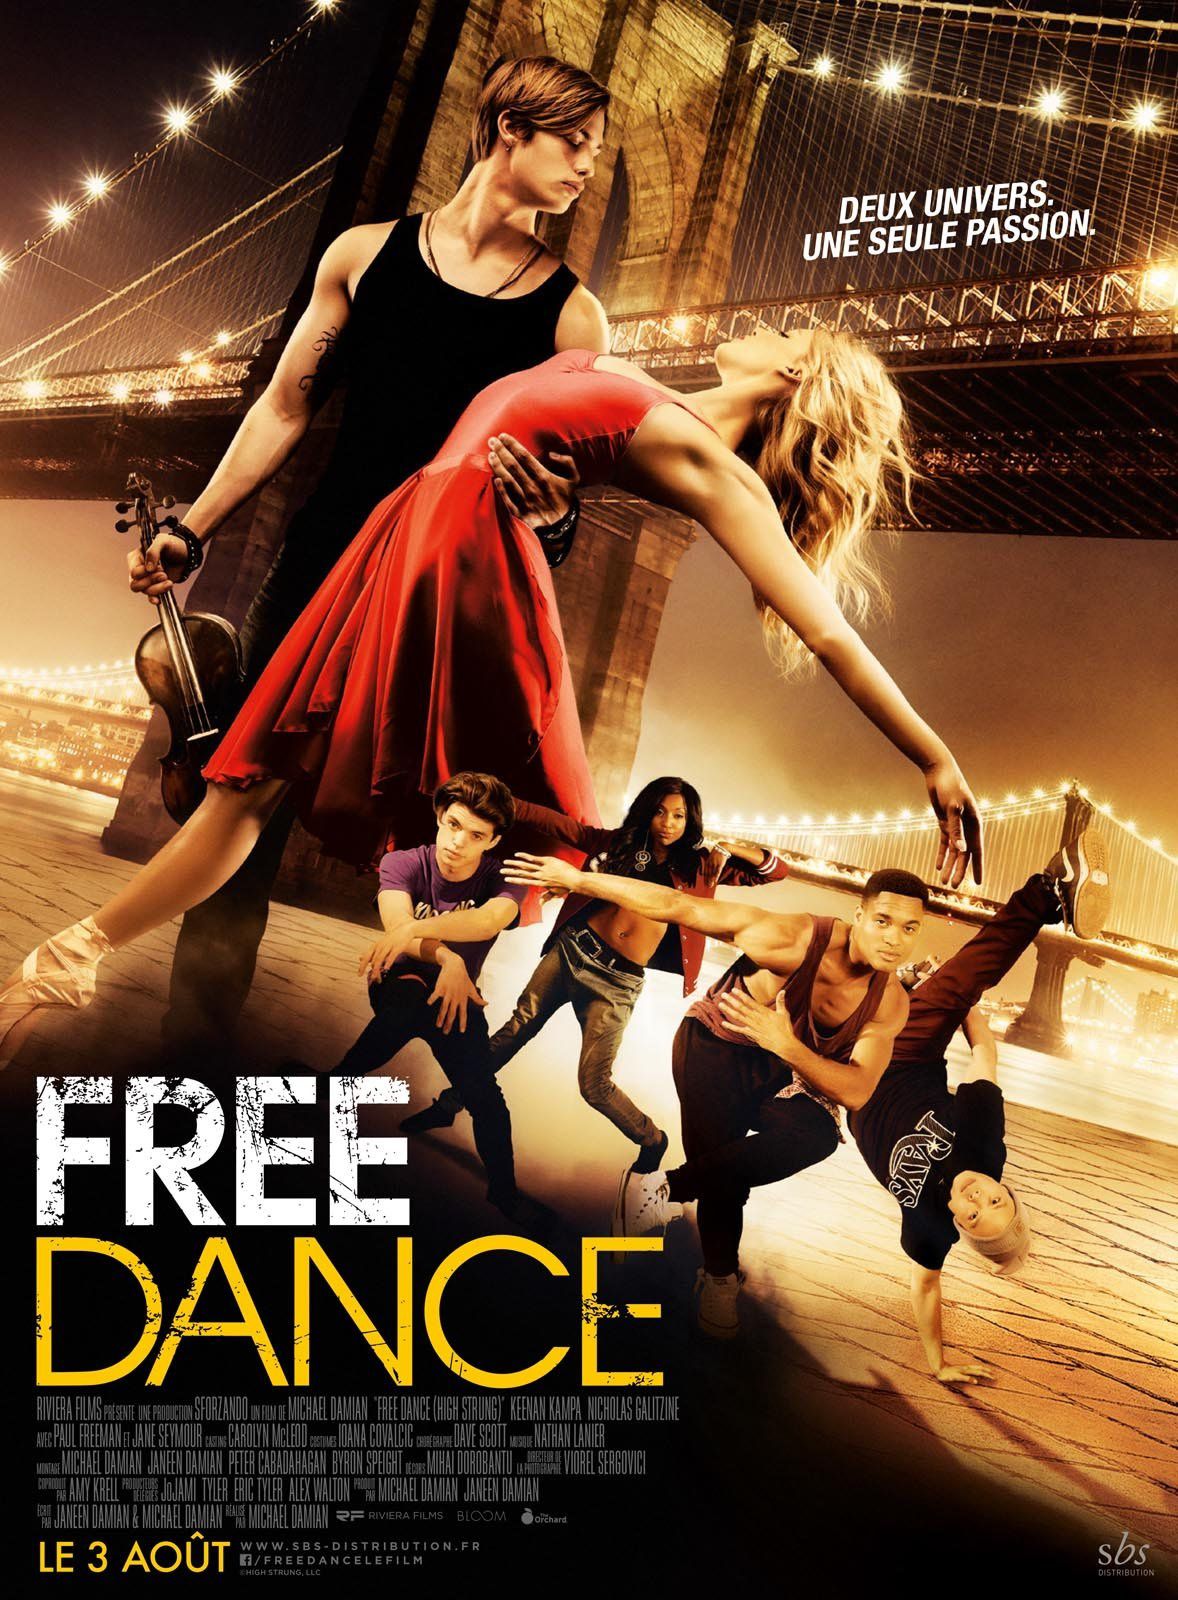 FREE DANCE (High Strung) (BANDE ANNONCE VF et VOST) avec Keenan Kampa, Nicholas Galitzine, Jane Seymour - Le 3 août 2016 au cinéma